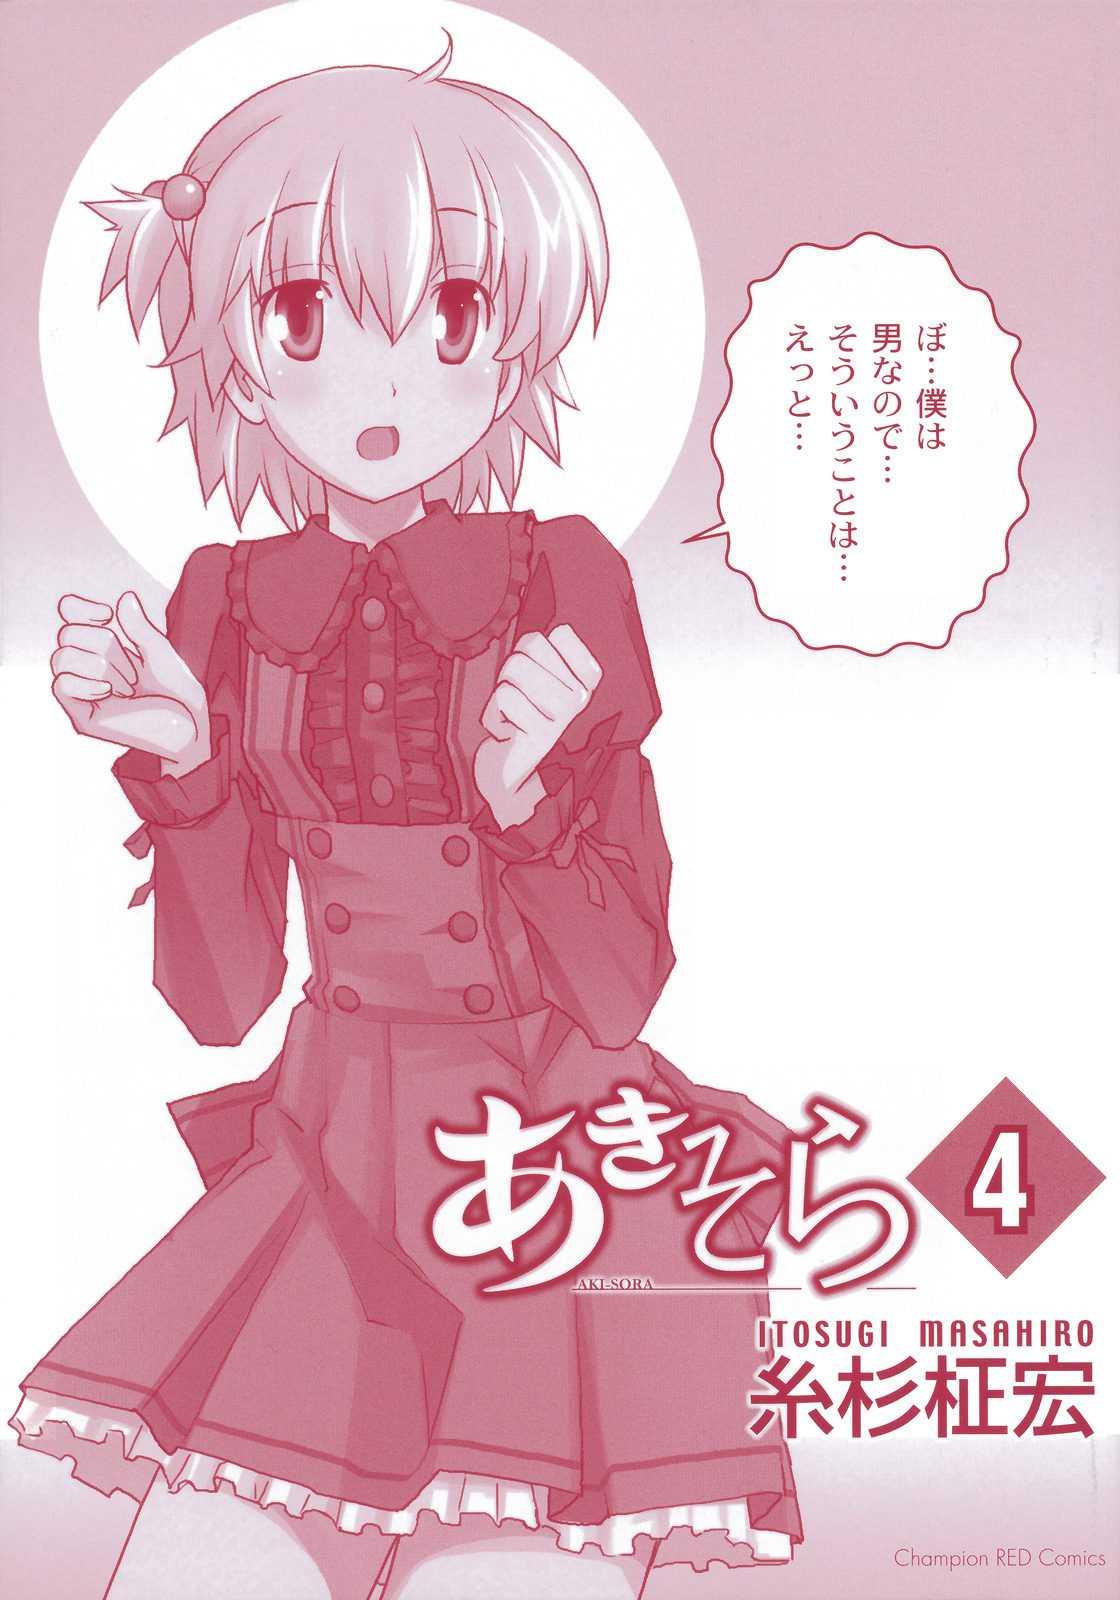 Aki Sora [ecchi] 4 Read Manga Aki Sora [ecchi] 4 Online